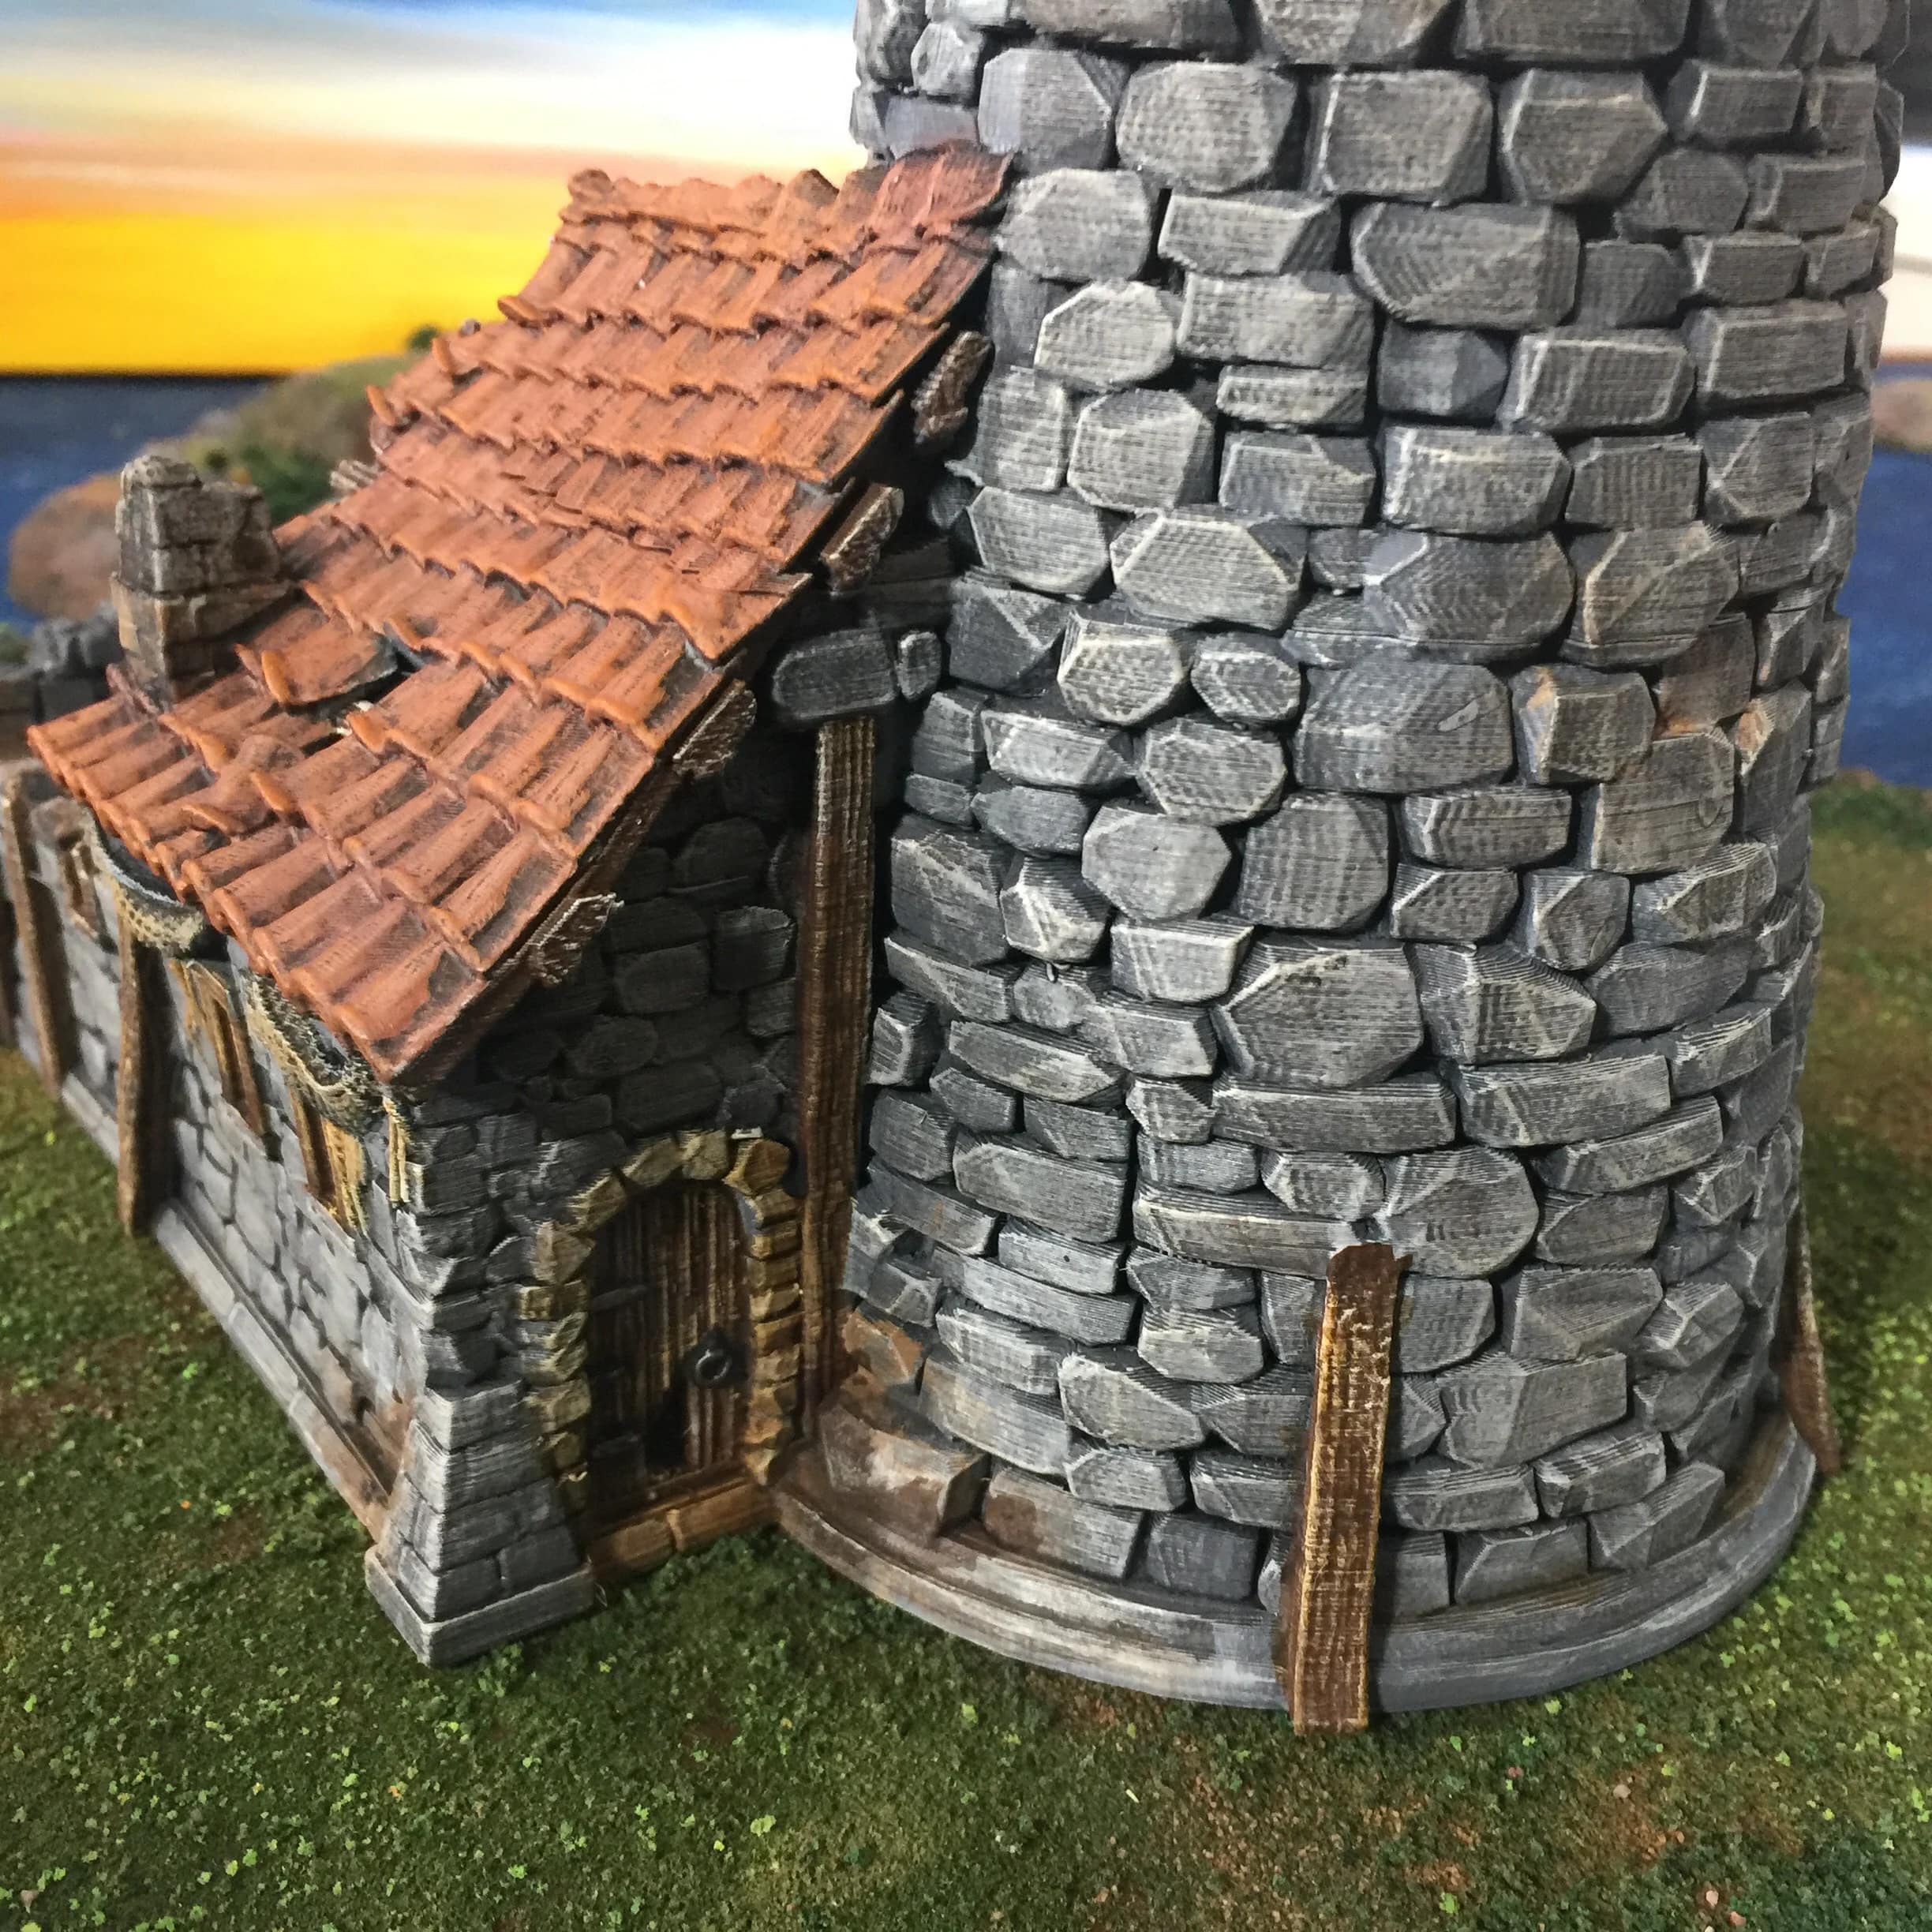 Ruined Lighthouse Scatter Terrain Model